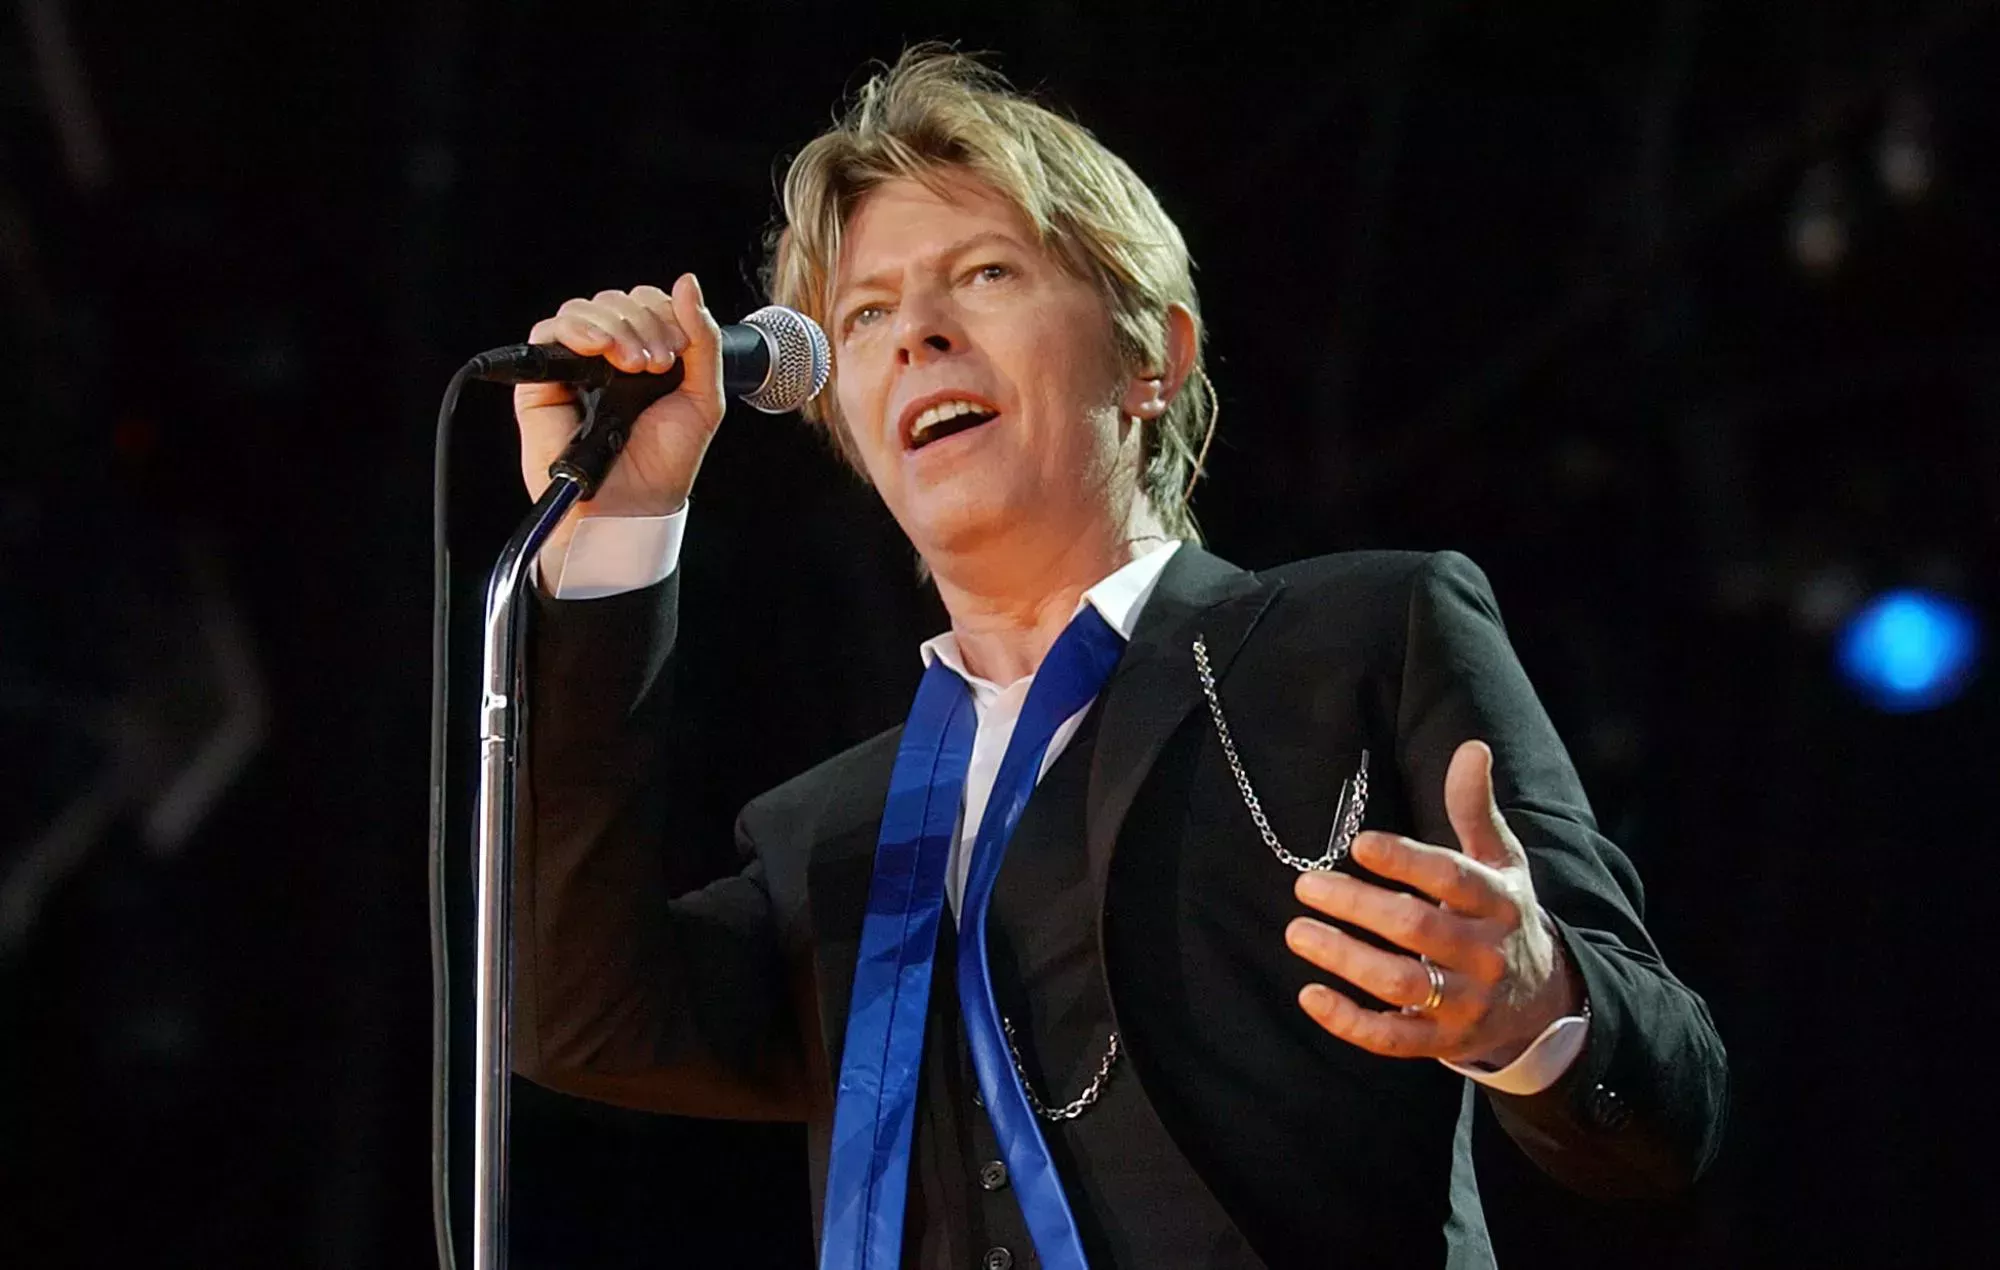 La hija de David Bowie comparte imágenes de ellos tocando juntos el teclado en el aniversario de su muerte